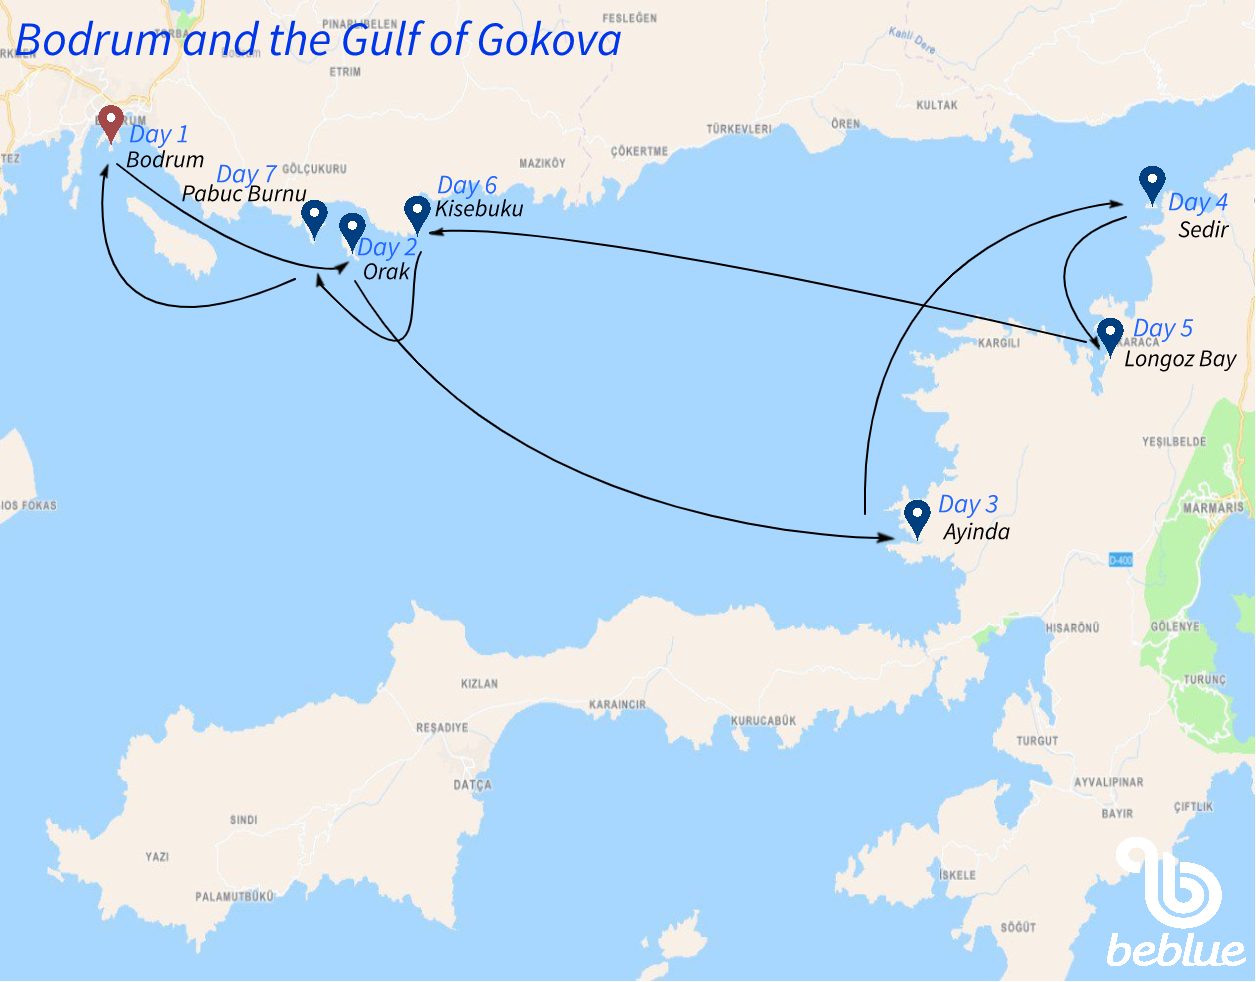 Gulet cruise: Bodrum and Gulf of Gokova - ID 511